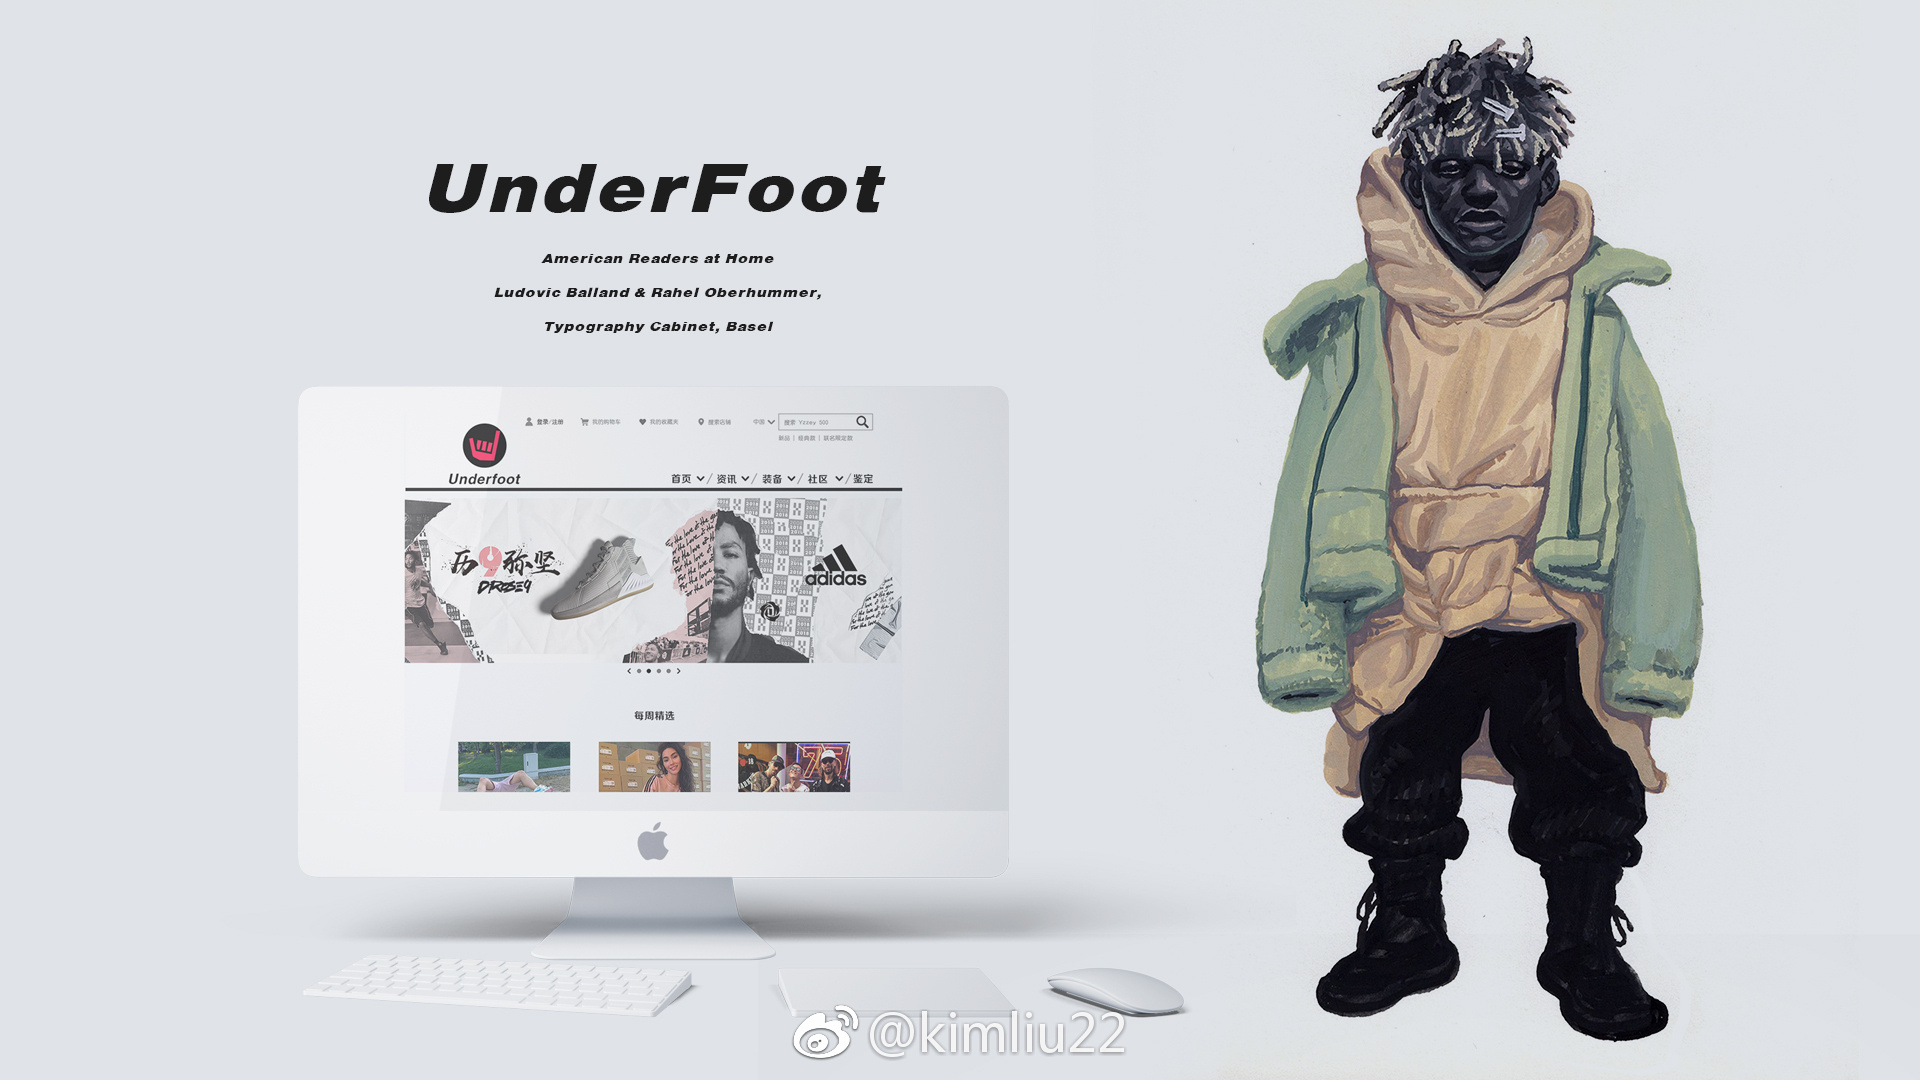 原创电商网页设计"underfoot"